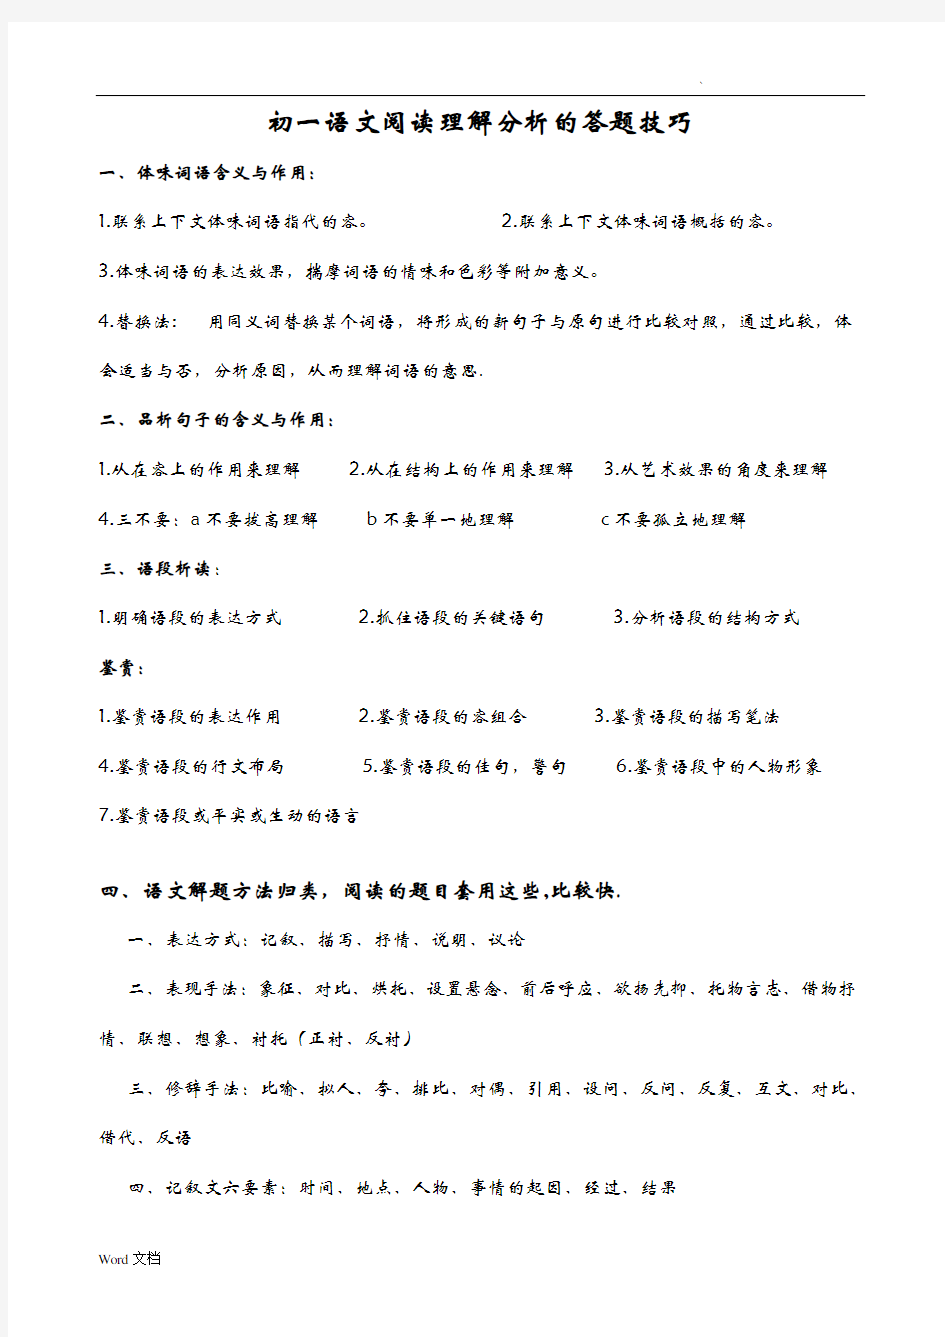 初中语文阅读理解分析的答题技巧